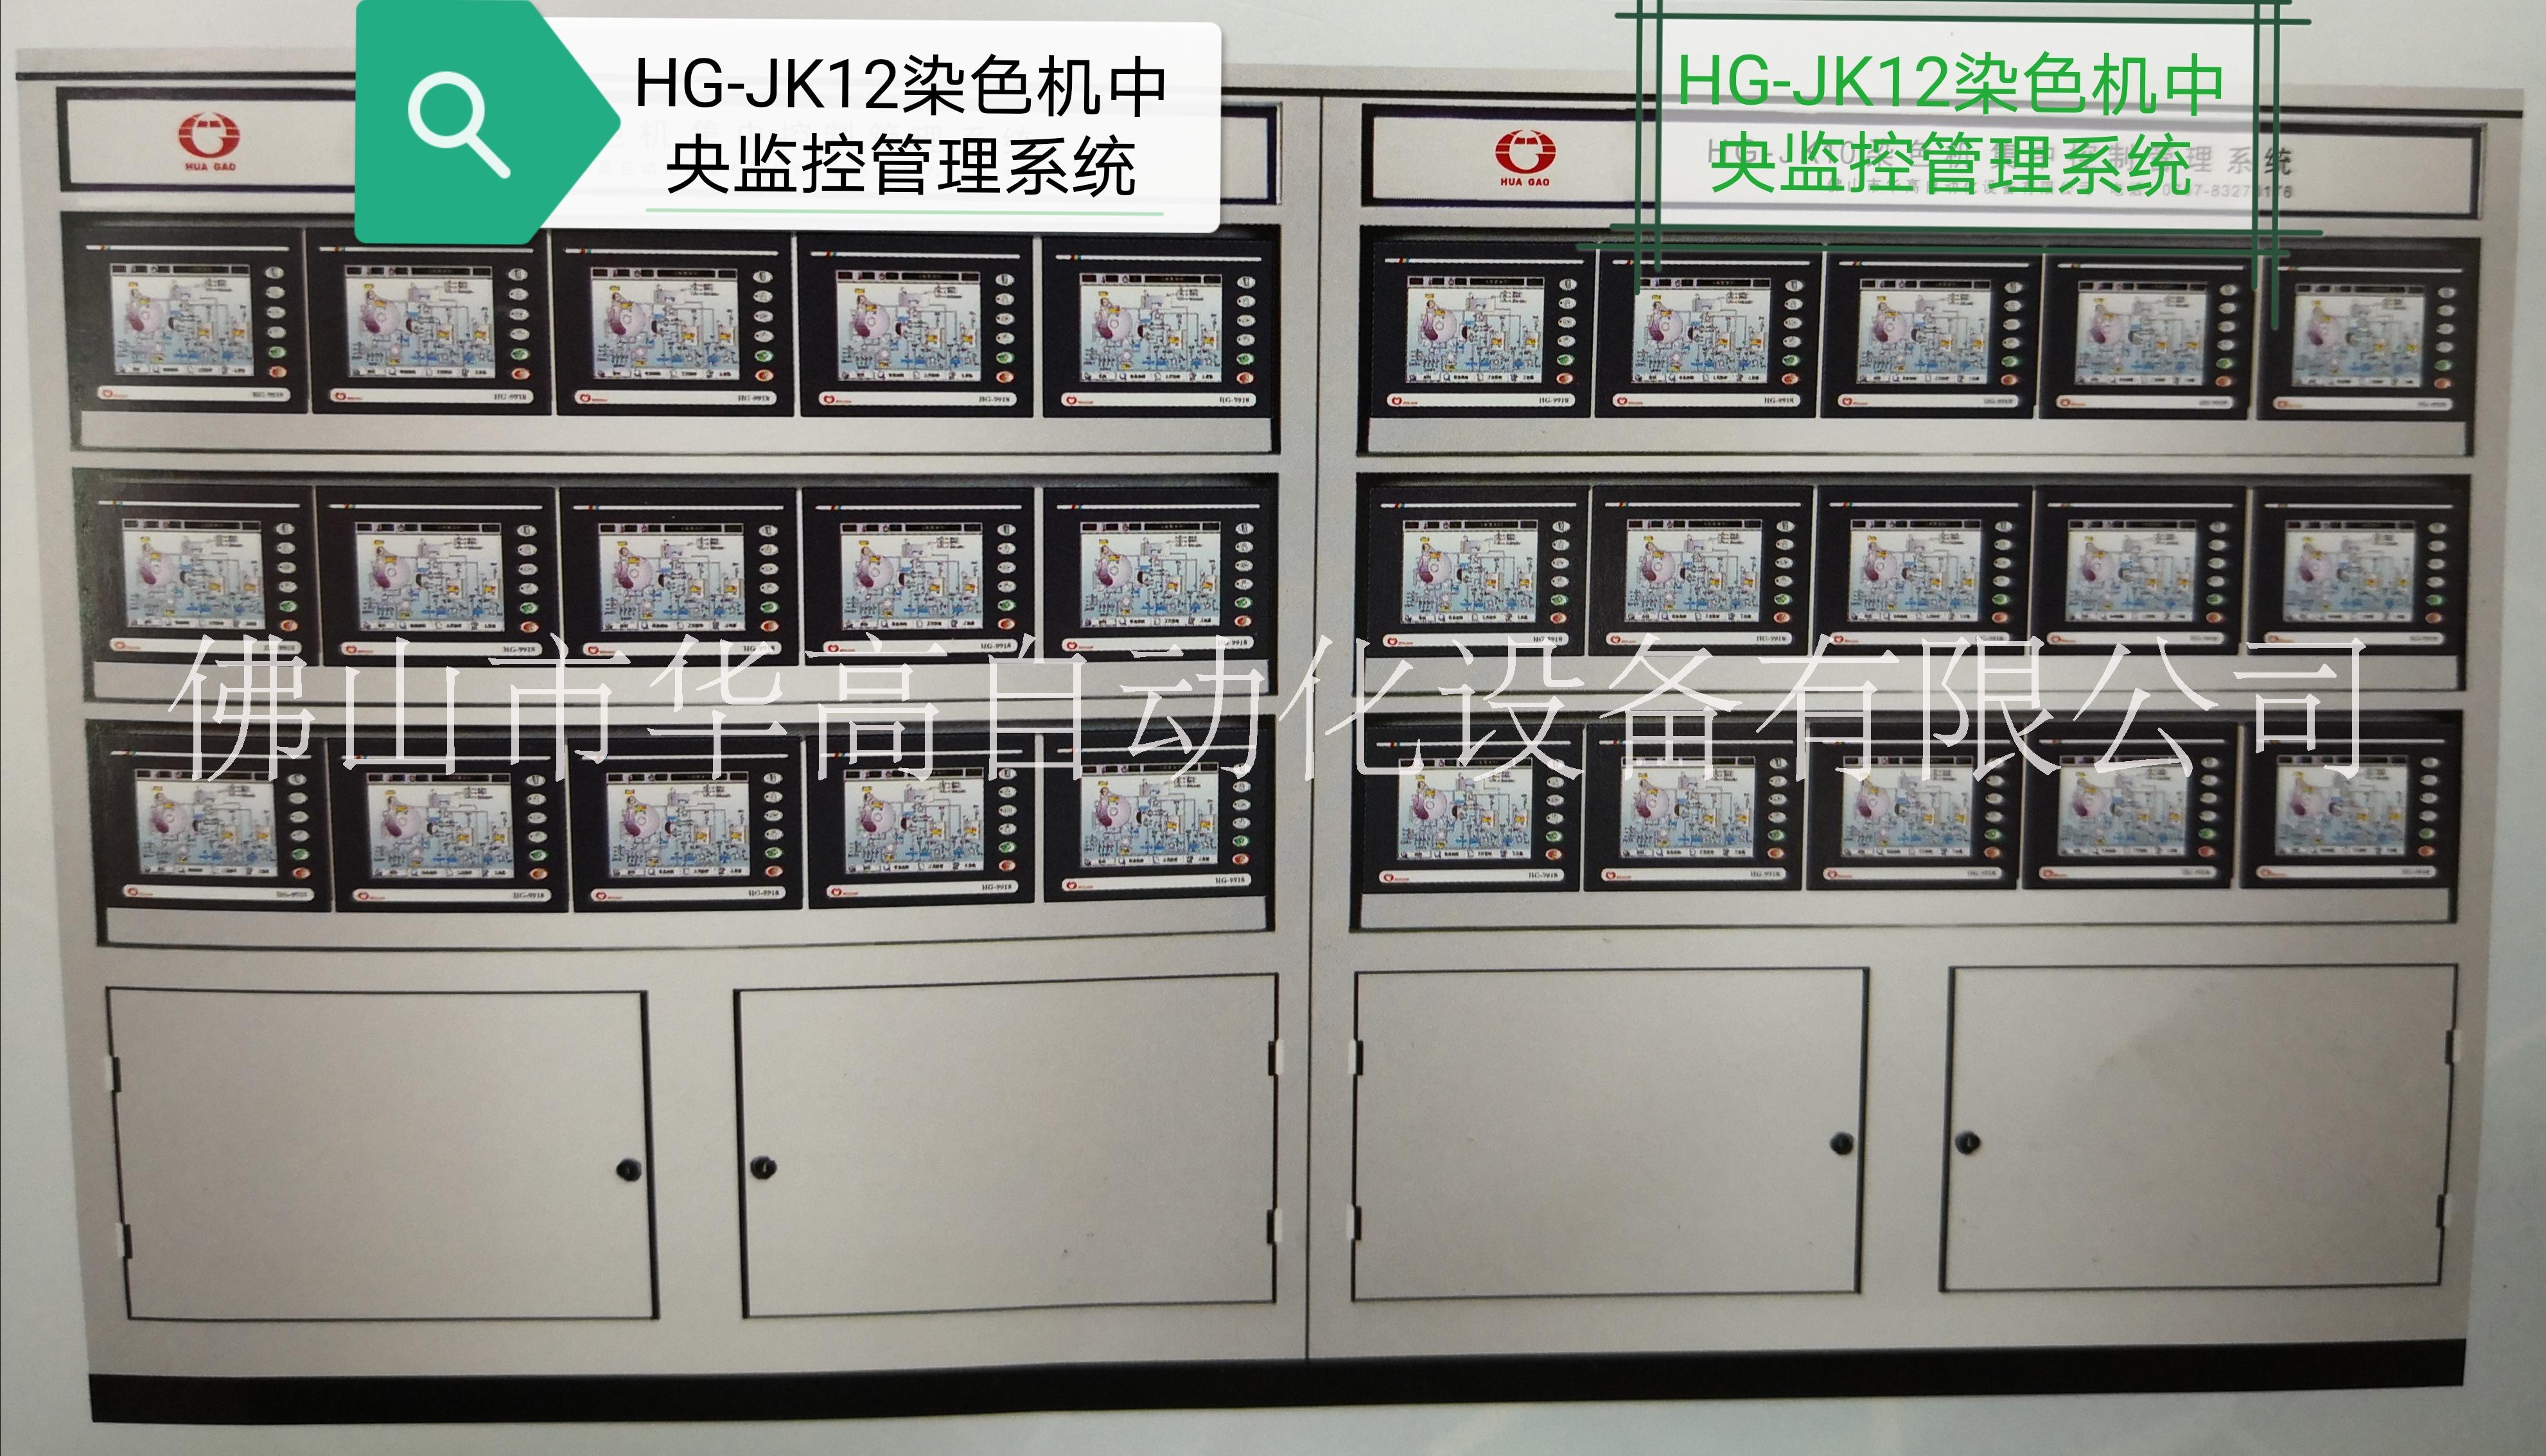 佛山华高 HG-JK12染色机电脑中央监控管理系统